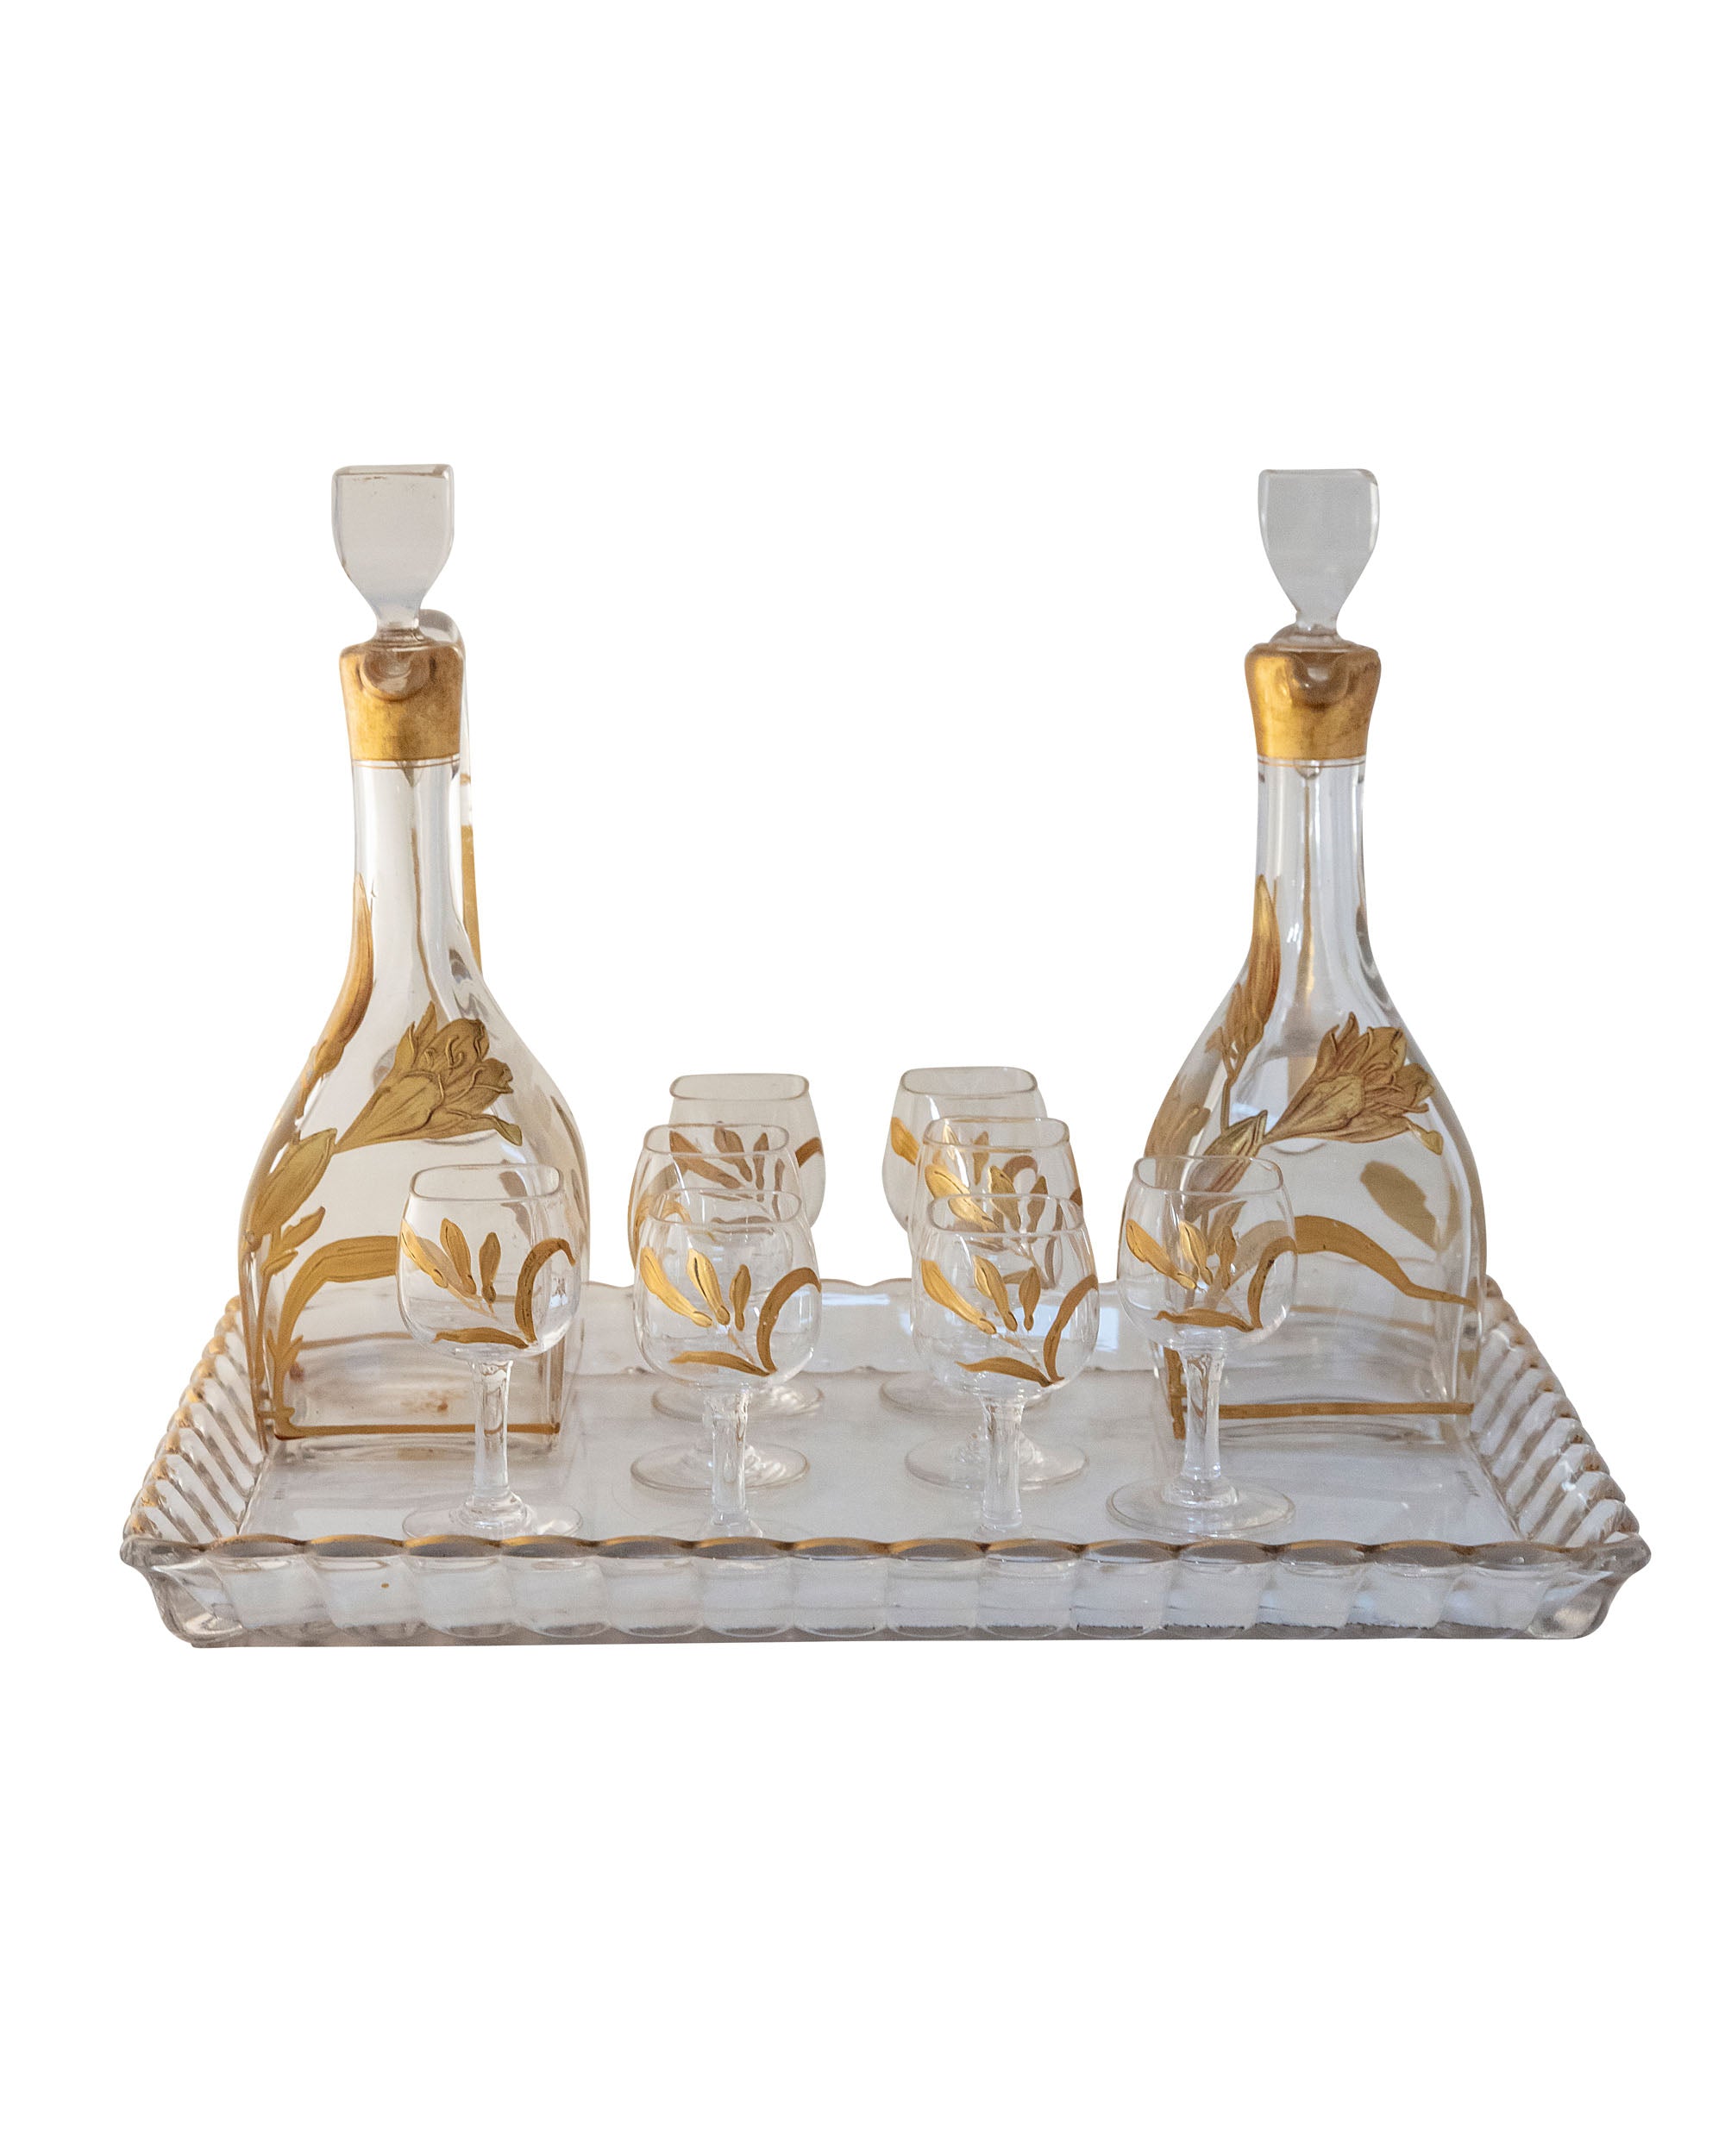 Ensemble de huit verres et deux bouteilles de liqueur en verre et peinture doré avec des motifs floraux avec plateau